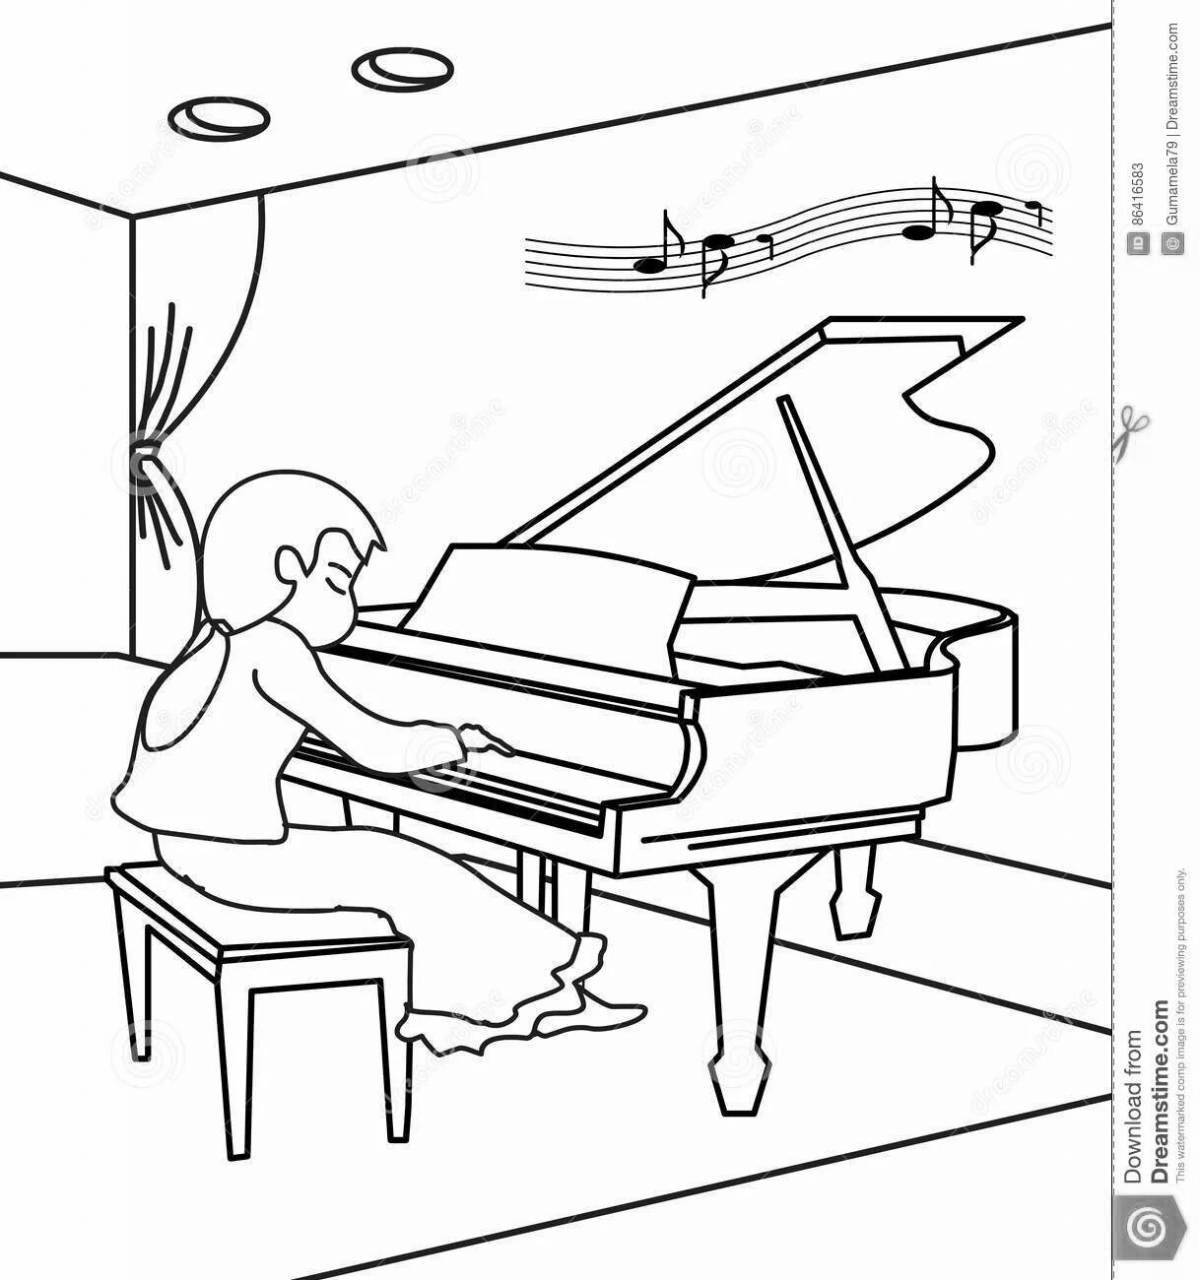 Фортепиано для детей #13